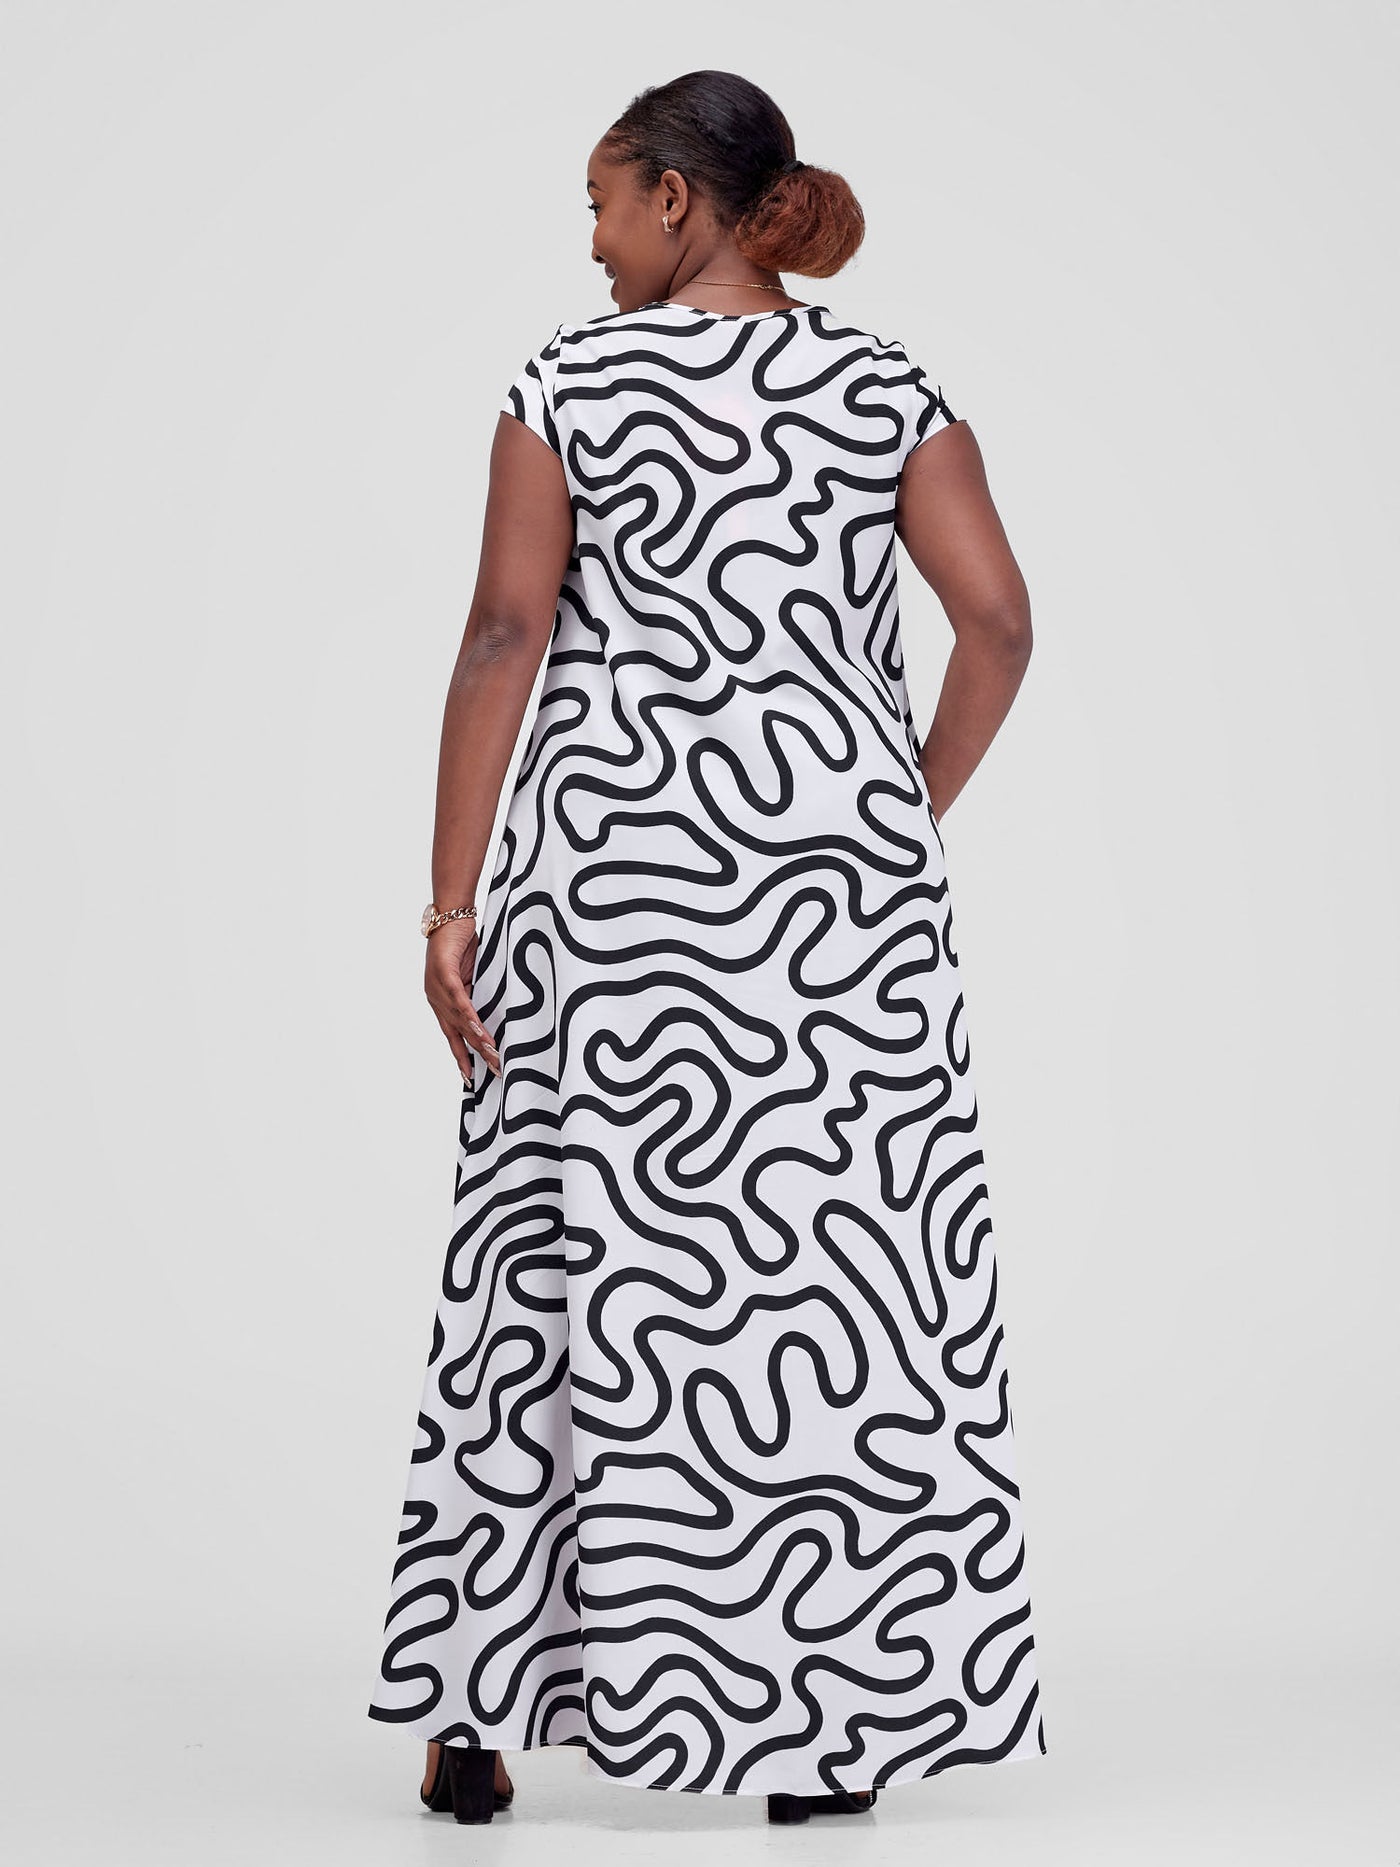 Vivo Sakari Cap Sleeve Maxi Dress - White / Black Kari Print